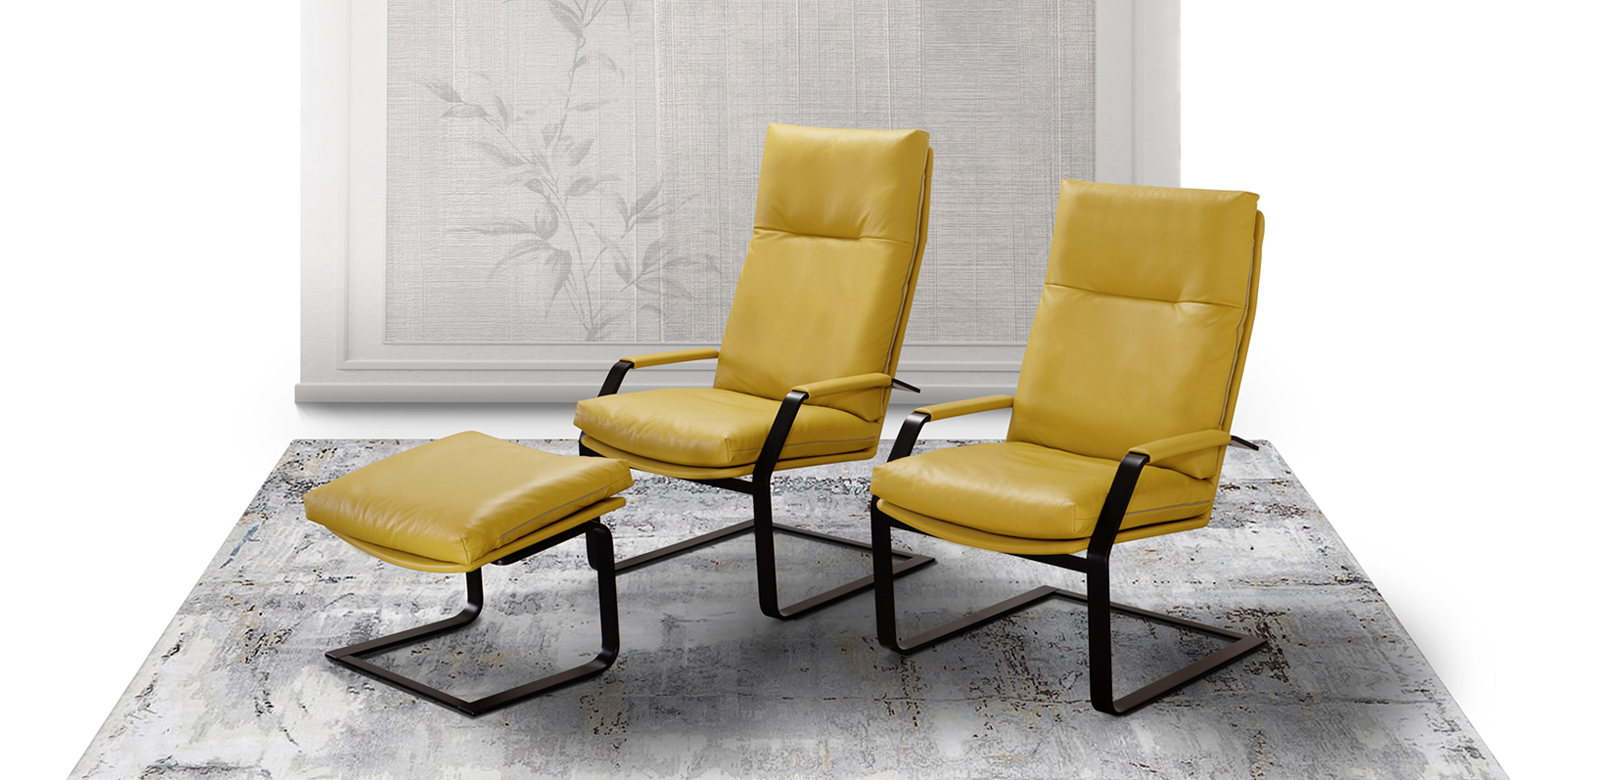 Freischwinger-Sessel CL262/263 aus dunkelgelben Leder mit passenden Hocker auf grauem Teppich